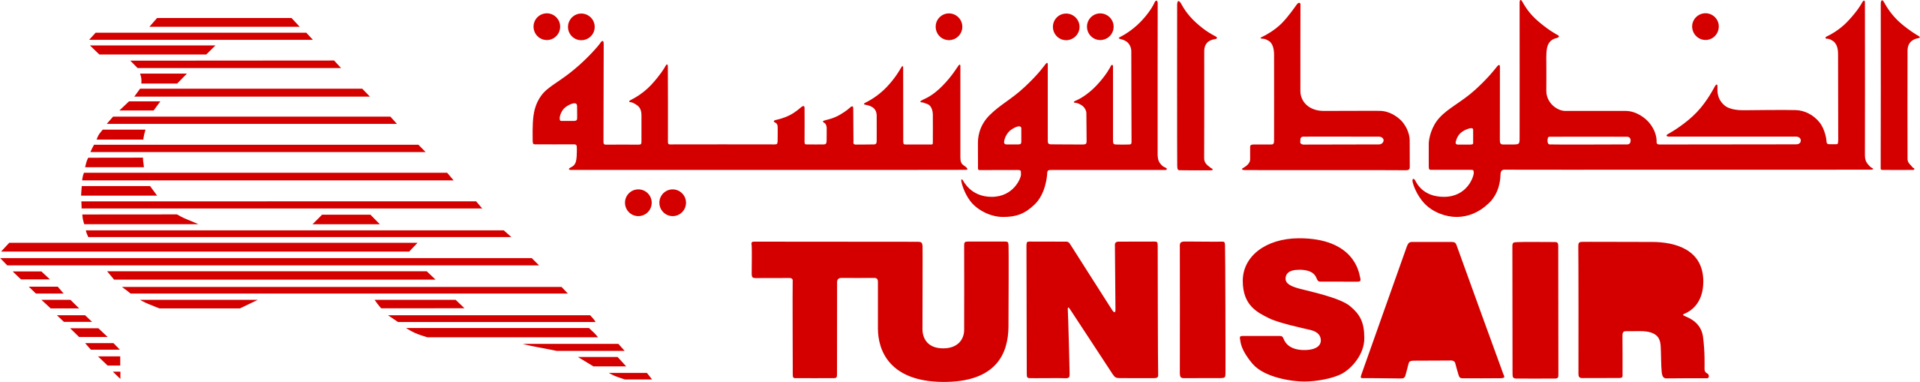 Tunisair_(logo).svg